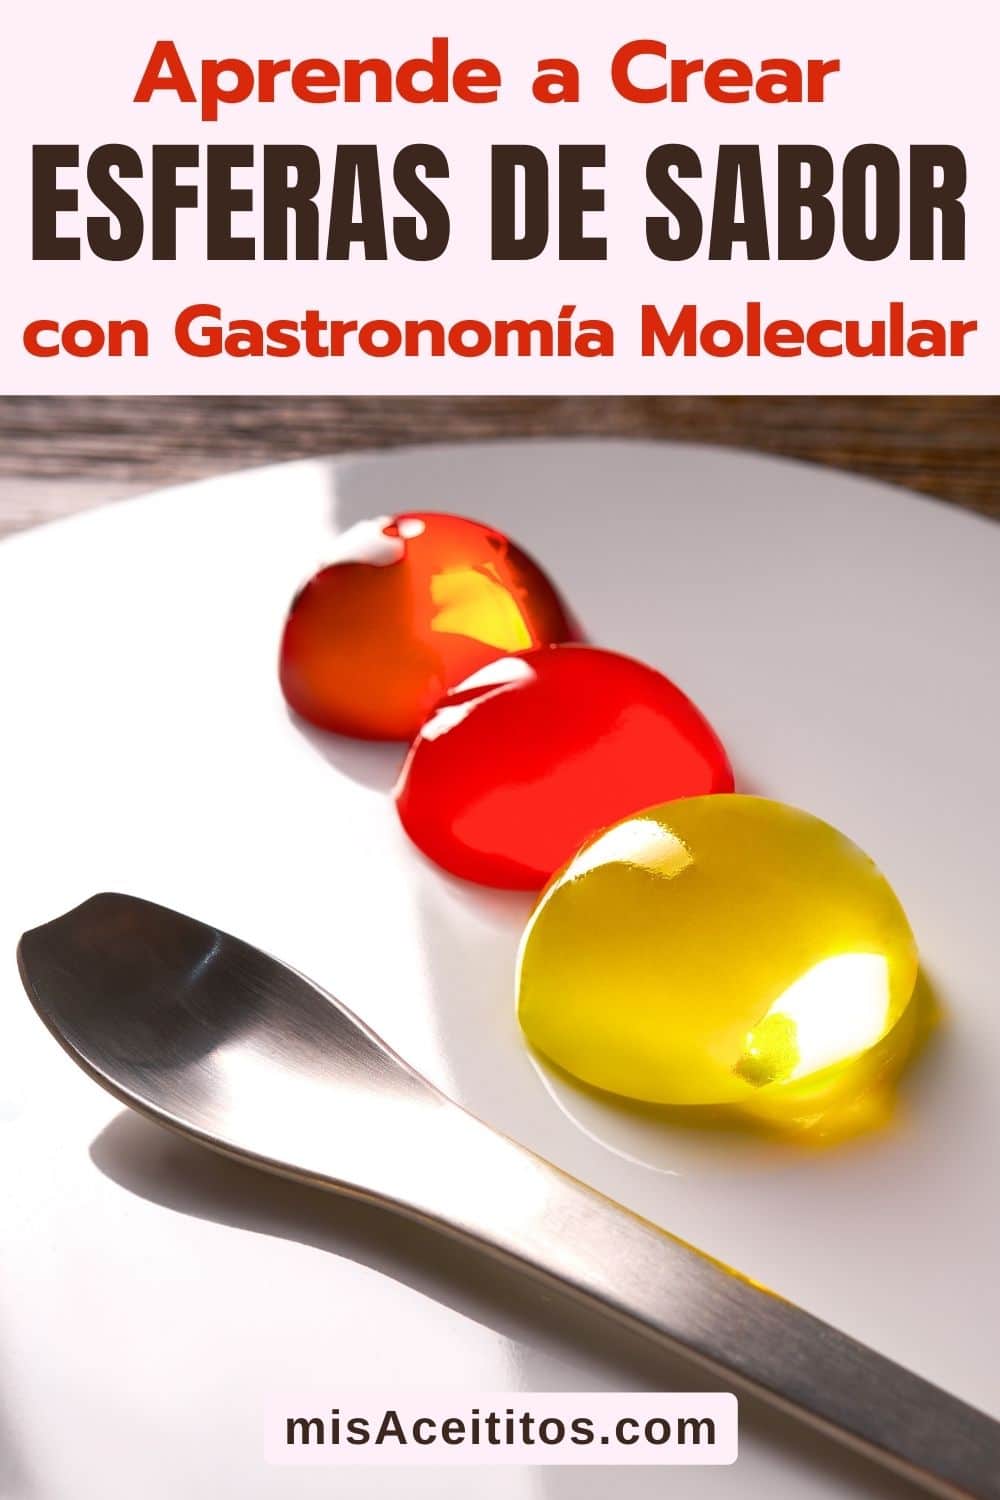 Esferificaciones de gastronomía molecular sobre plato blanco y cuchara de diseño.